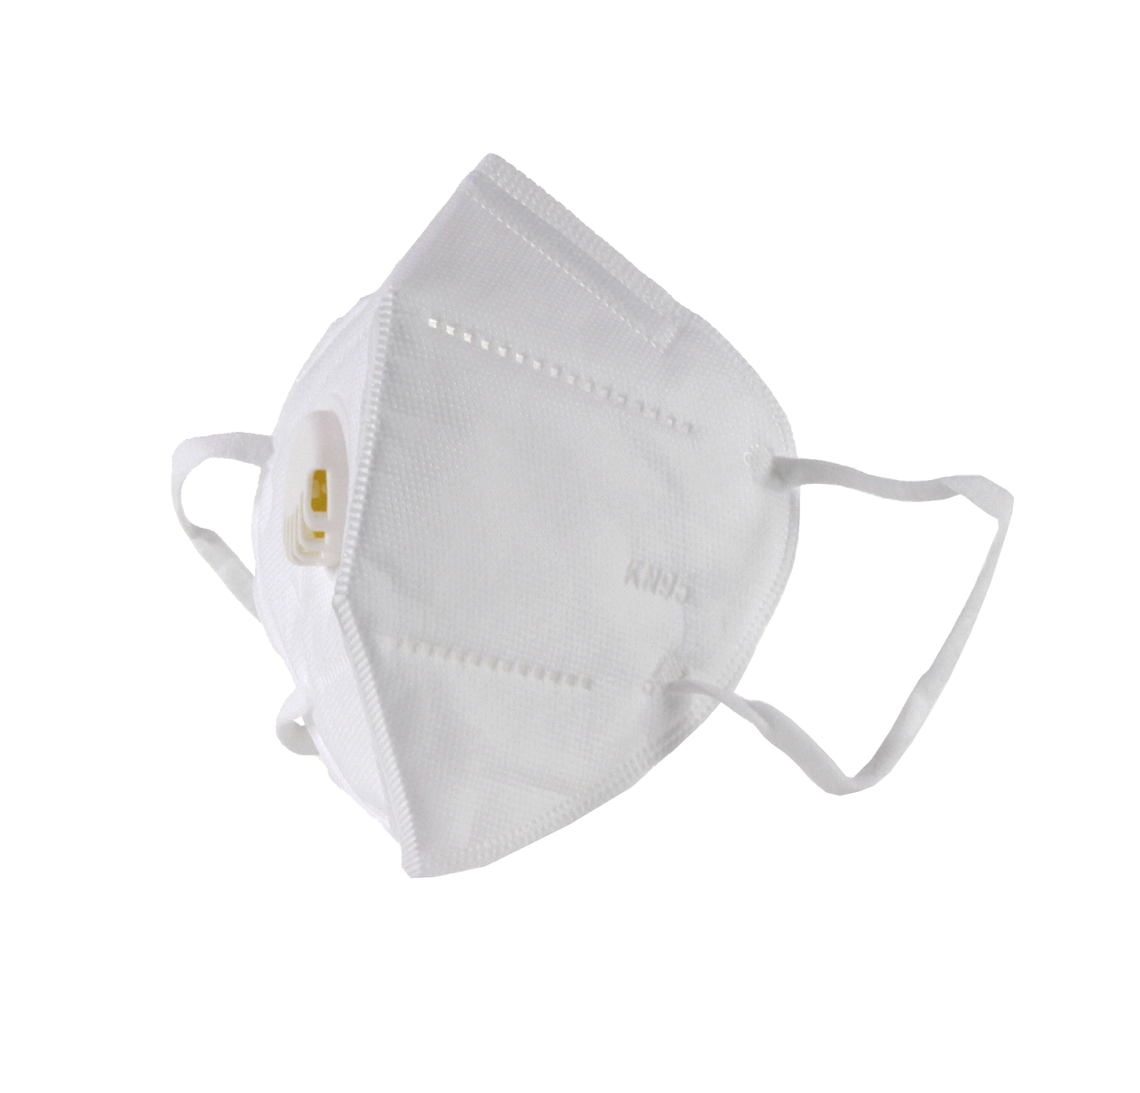 KN95 Mundschutz Atemschutz mit Filter Maske 1 Stück 95% Filterleistung FPP2 vergleichbar